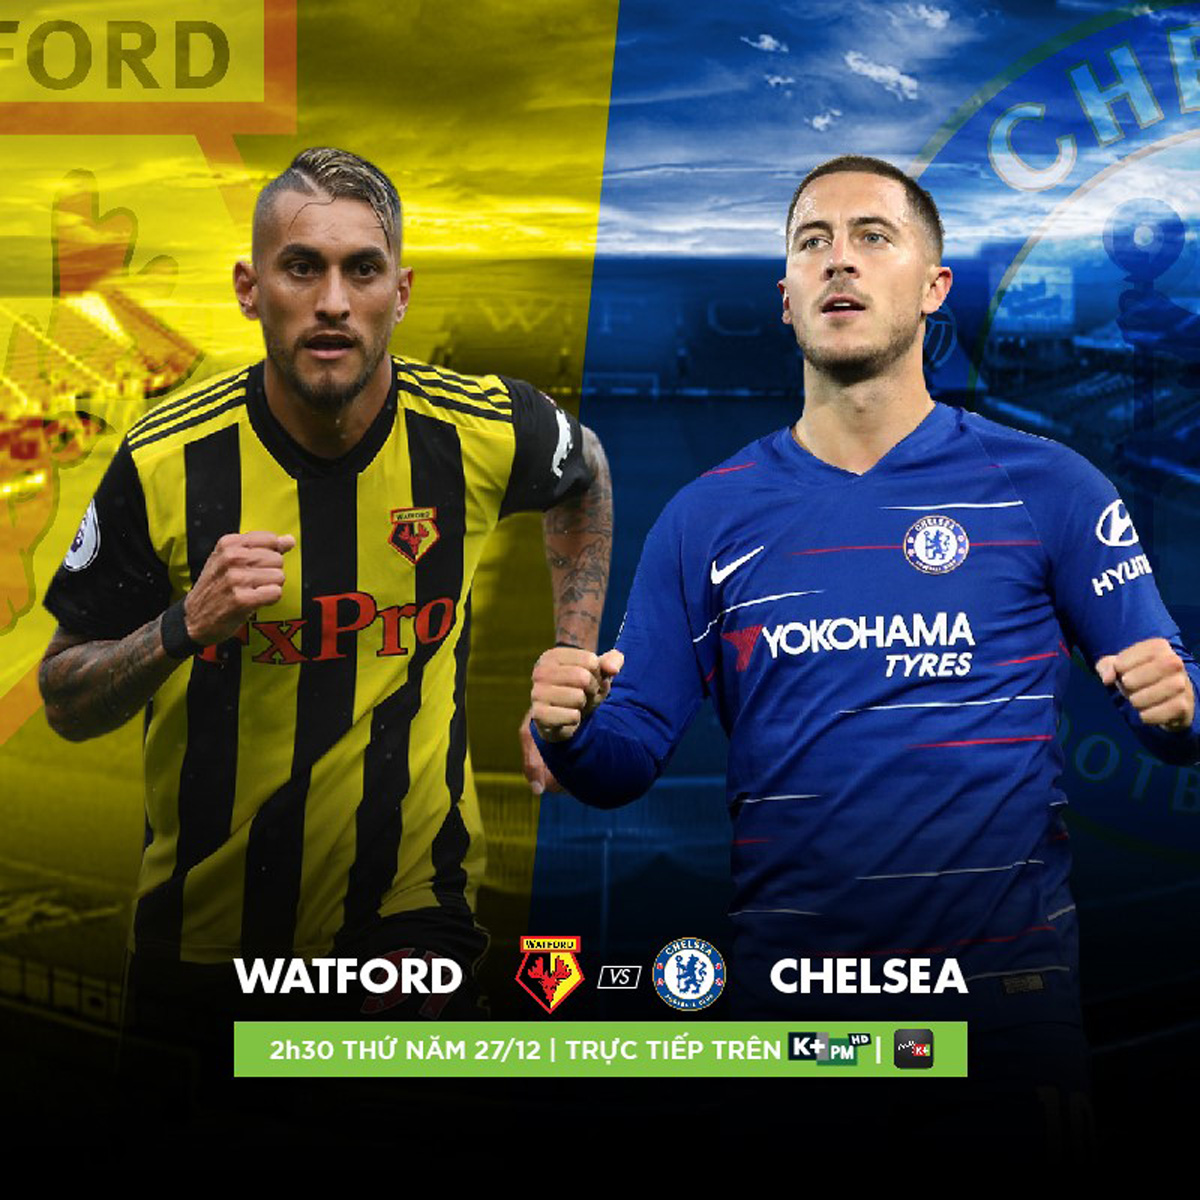 Đón xem trận Watford - Chelsea được phát sóng độc quyền trên K+PM vào lúc 2giờ 30 ngày 27.12